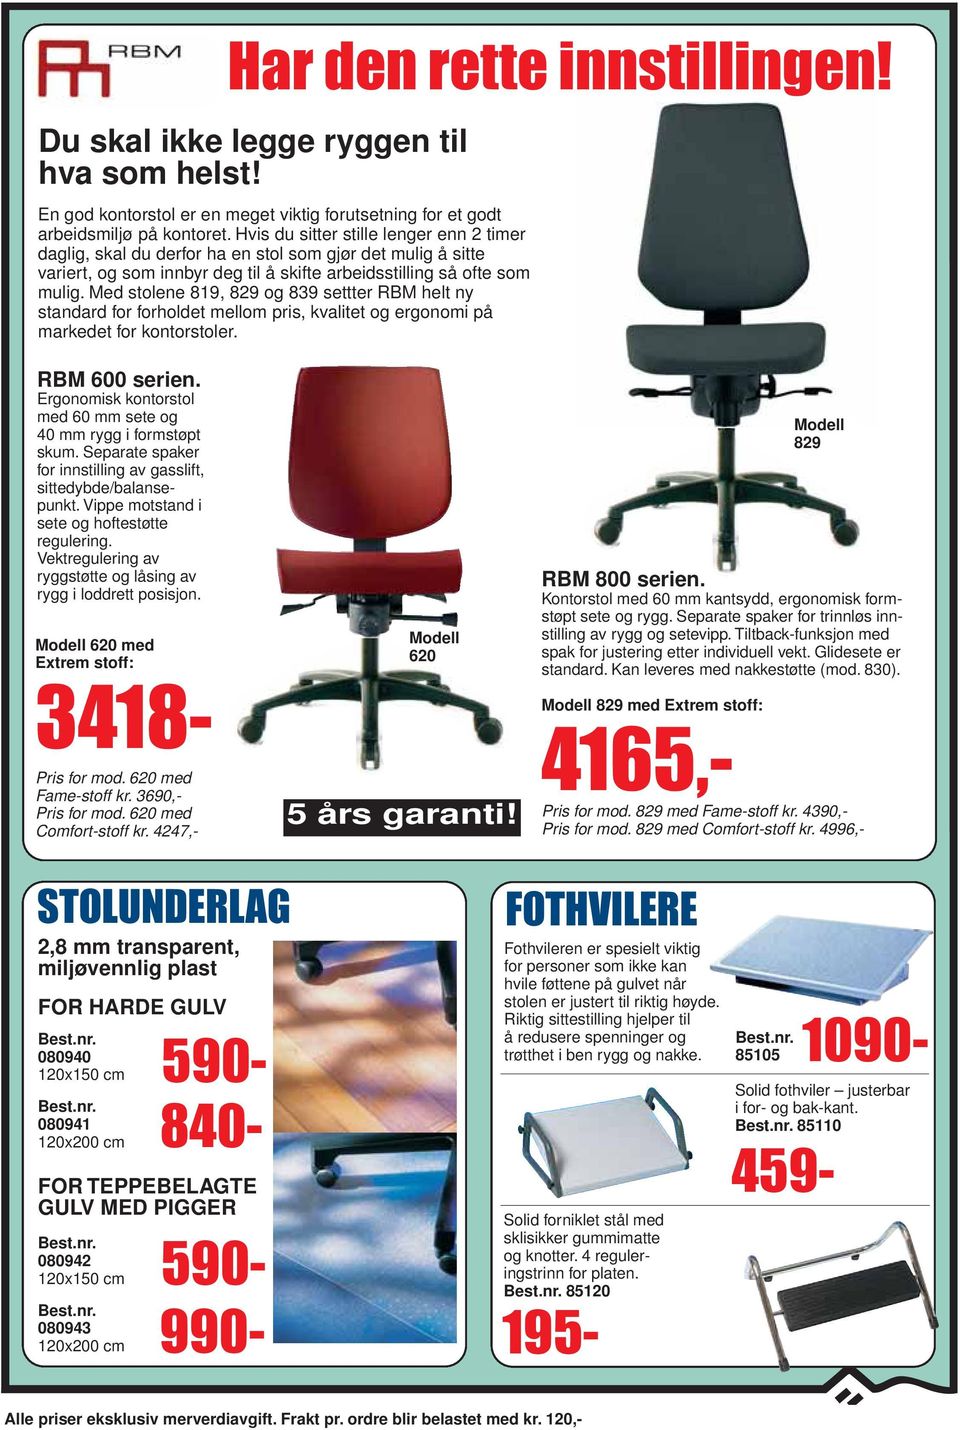 Med stolene 819, 829 og 839 settter RBM helt ny standard for forholdet mellom pris, kvalitet og ergonomi på markedet for kontorstoler. RBM 600 serien.